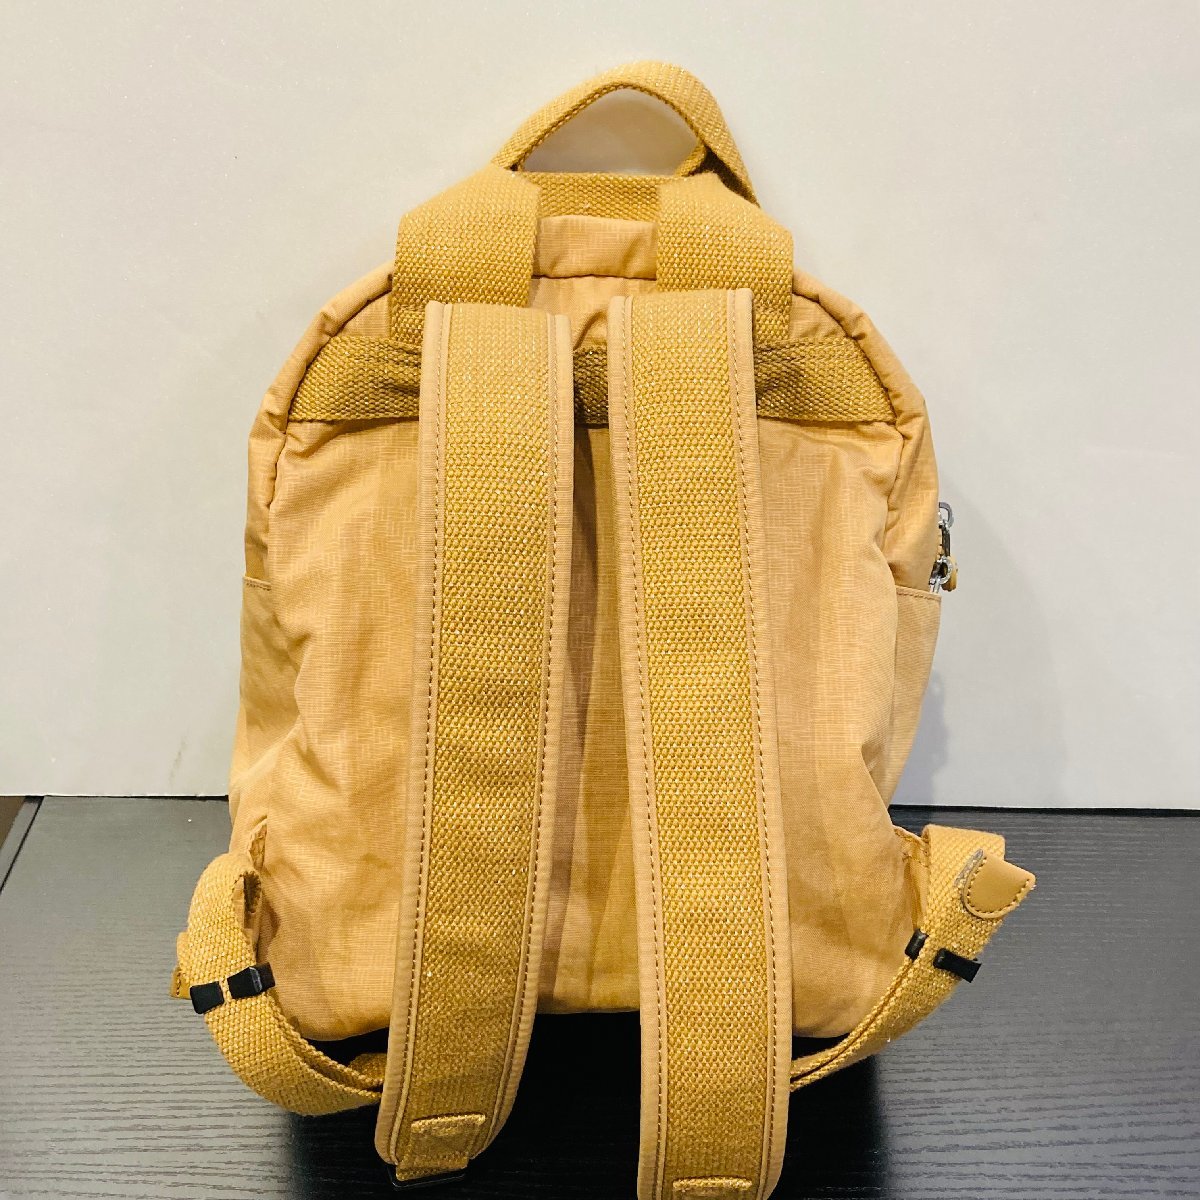 [76] прекрасный товар kipling Kipling рюкзак бежевый рюкзак бренд женский популярный задний 